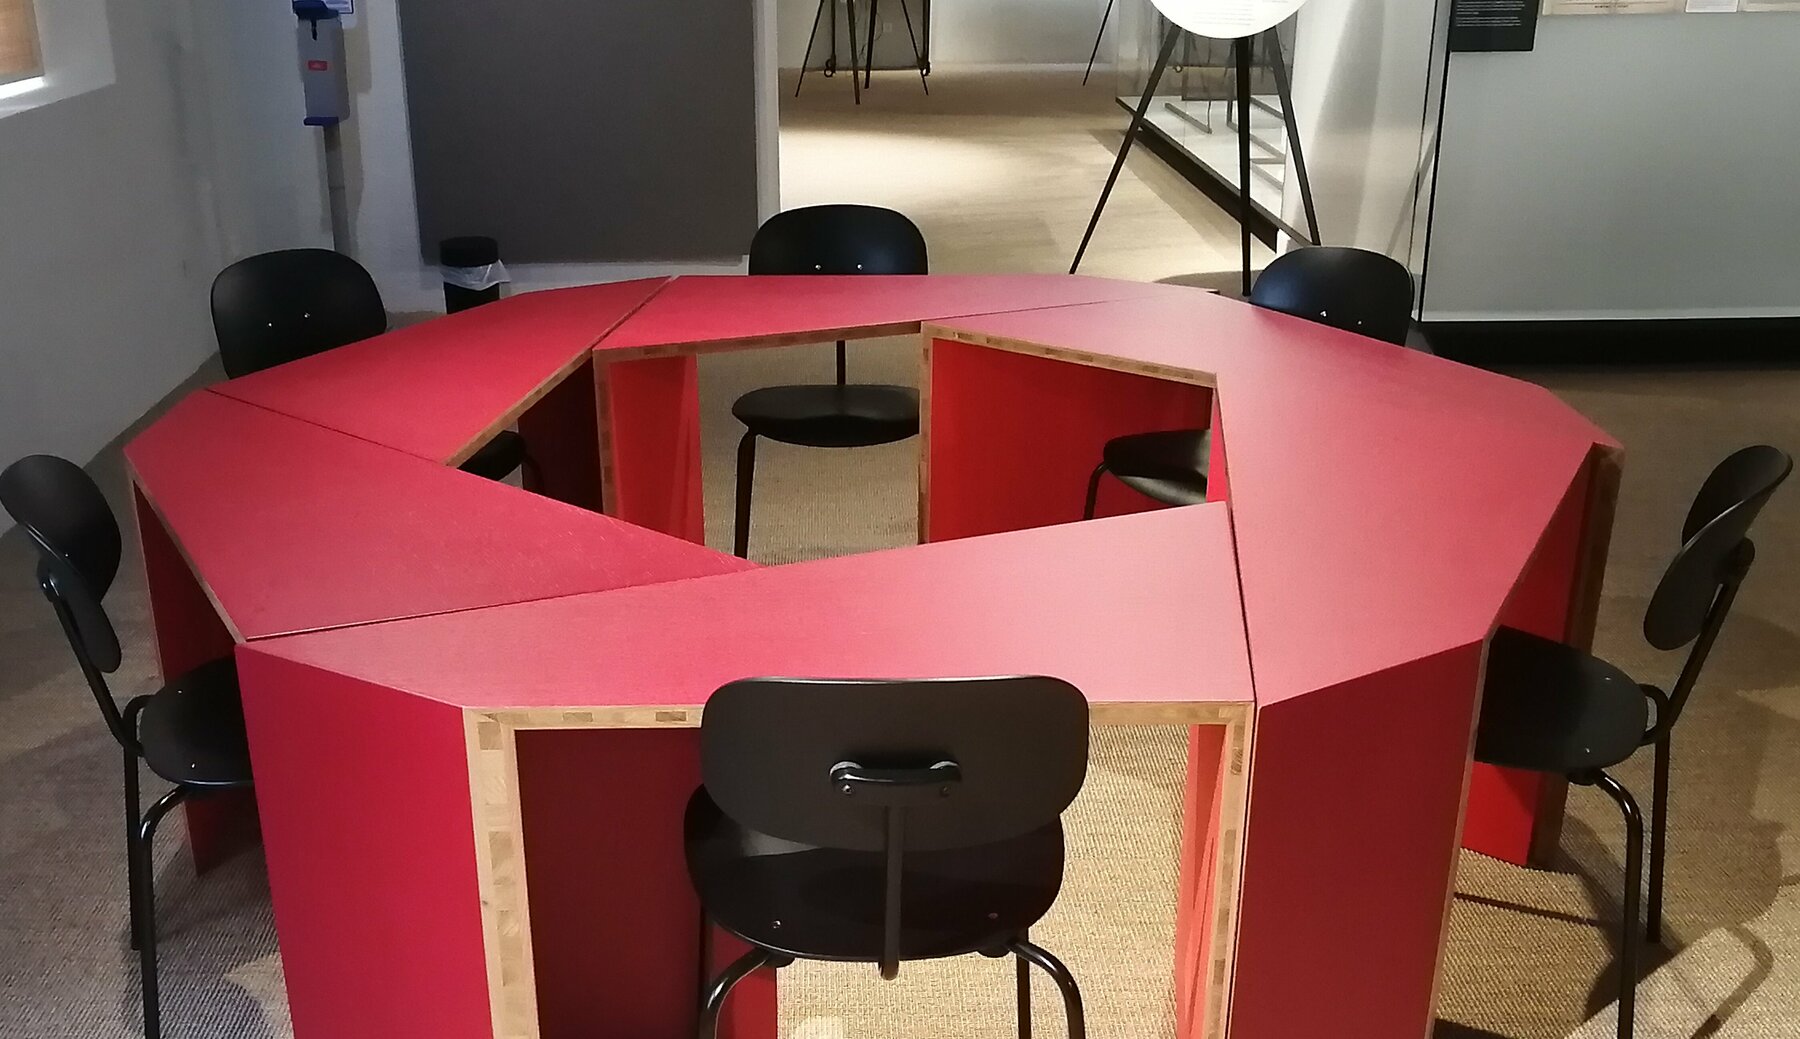 Das sogenannte Mitsprechzimmer im Volkskundemuseum: rote Tischelemente in einem Raum, die von Besucherinnen umgestellt und zum Austausch benutzt werden können